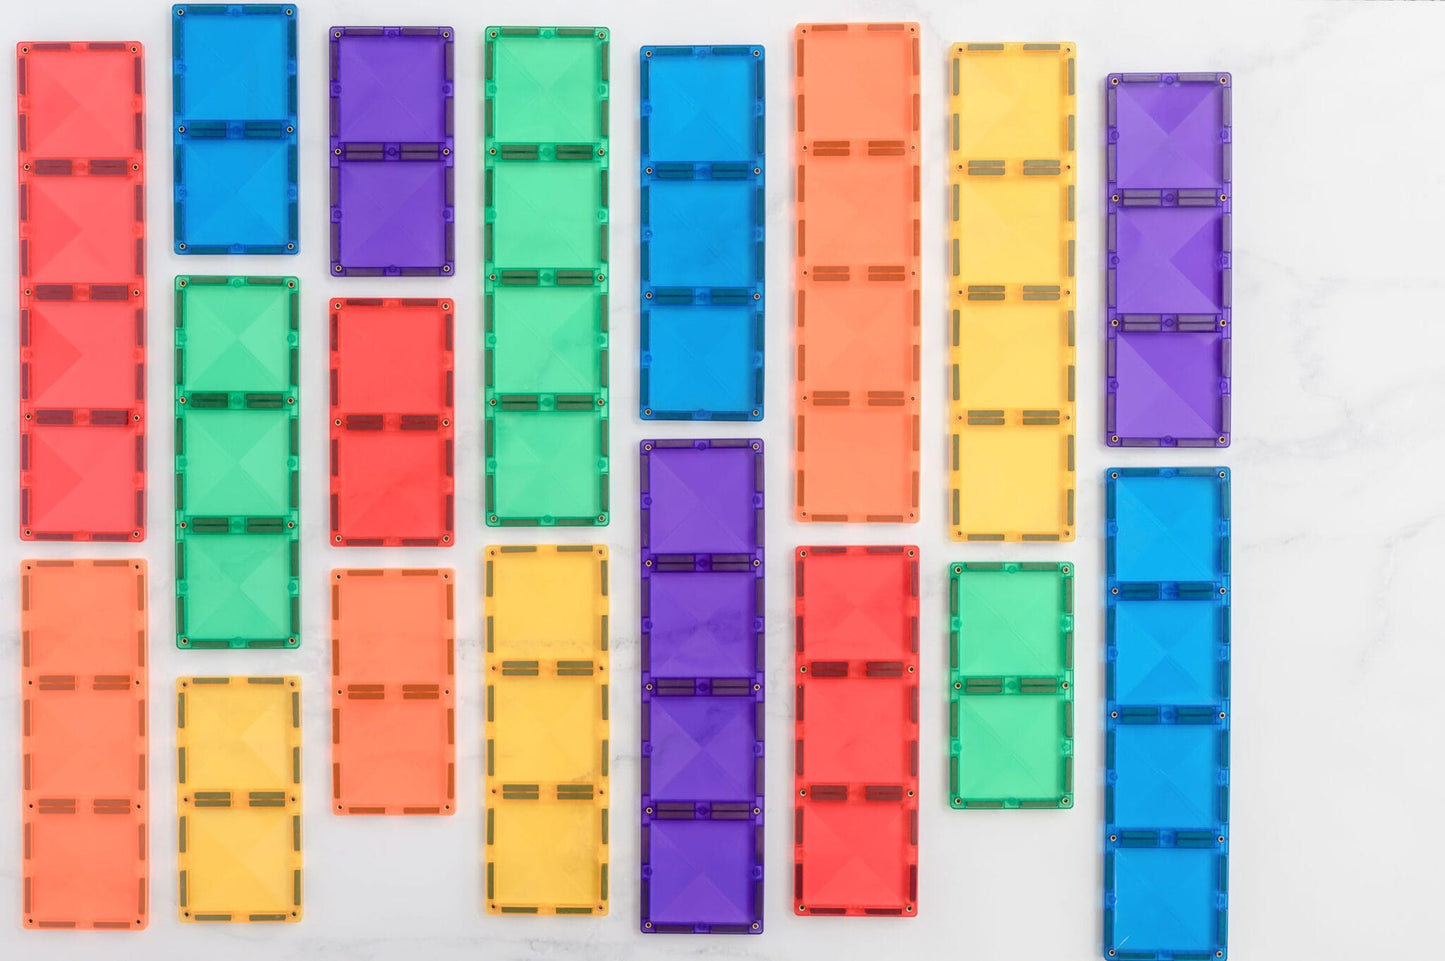 18 Piece Rainbow Rectangle Pack - Connetix Tiles